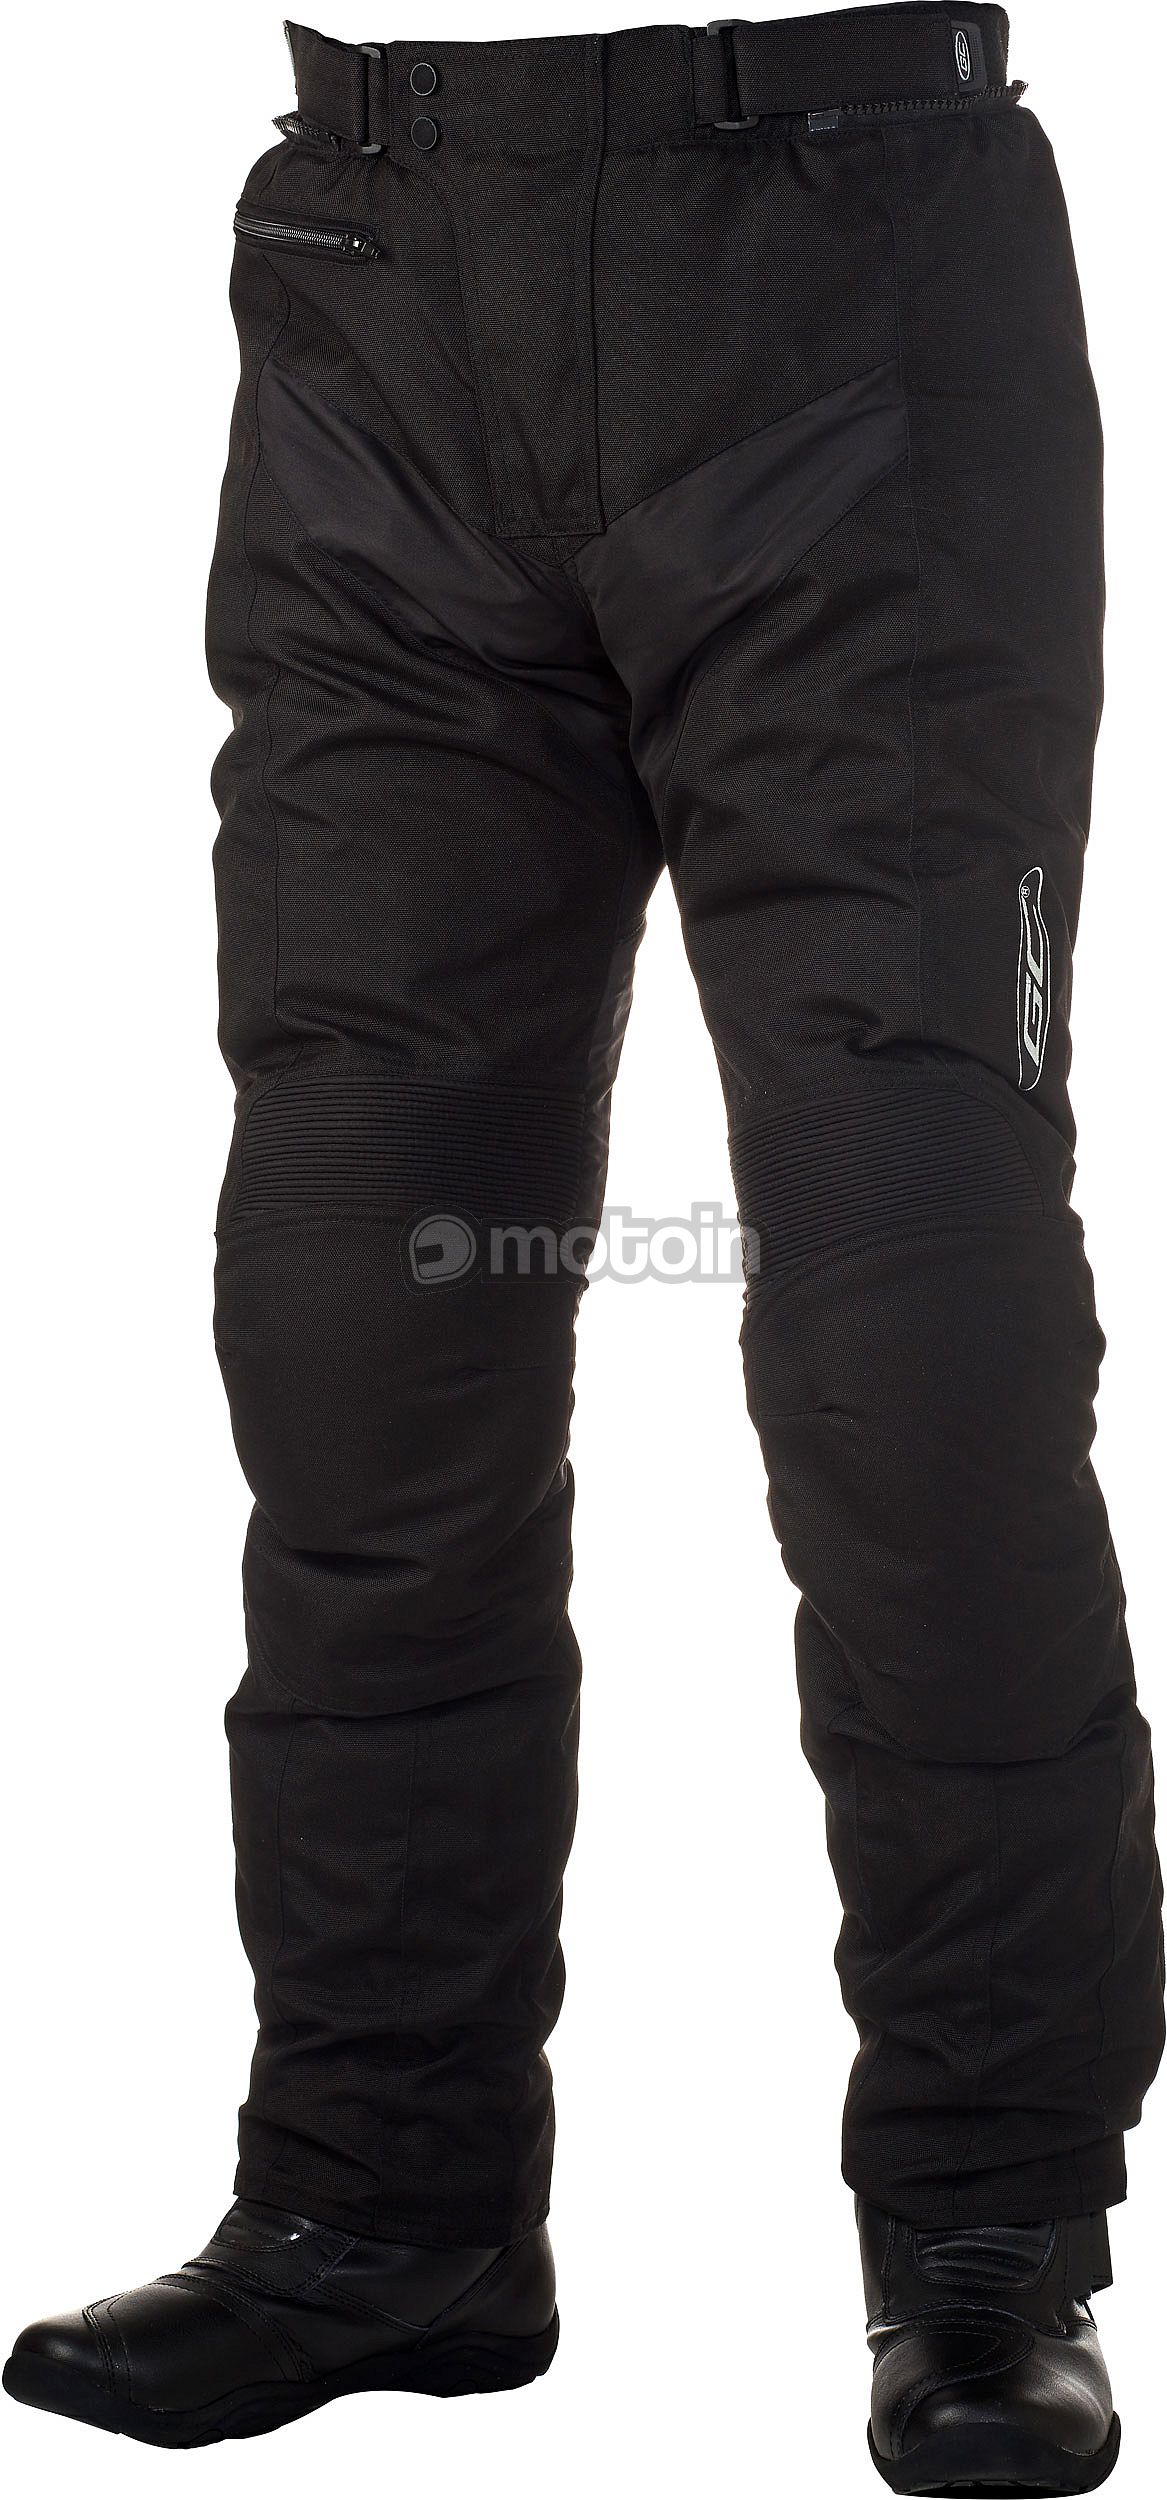 GC Bikewear Panther, spodnie tekstylne